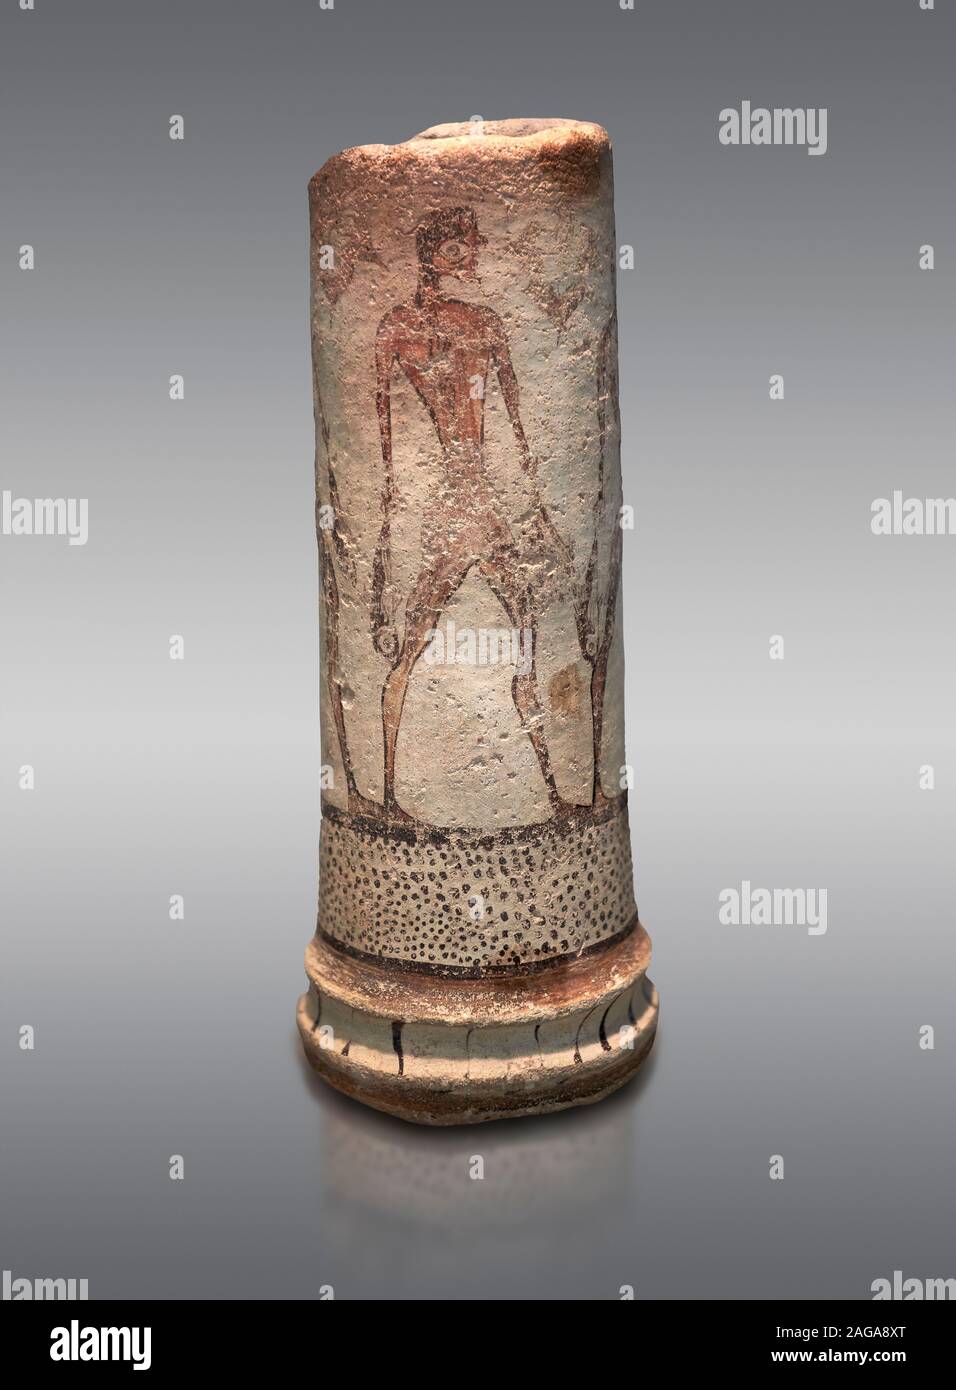 Vase cylindrique illustré des Cyclades avec un pêcheur (1600 avant J.-C.) , III de Phylakopi, Melos. Musée National Archéologique d'Athènes. Cat No 5782. Bac gris Banque D'Images